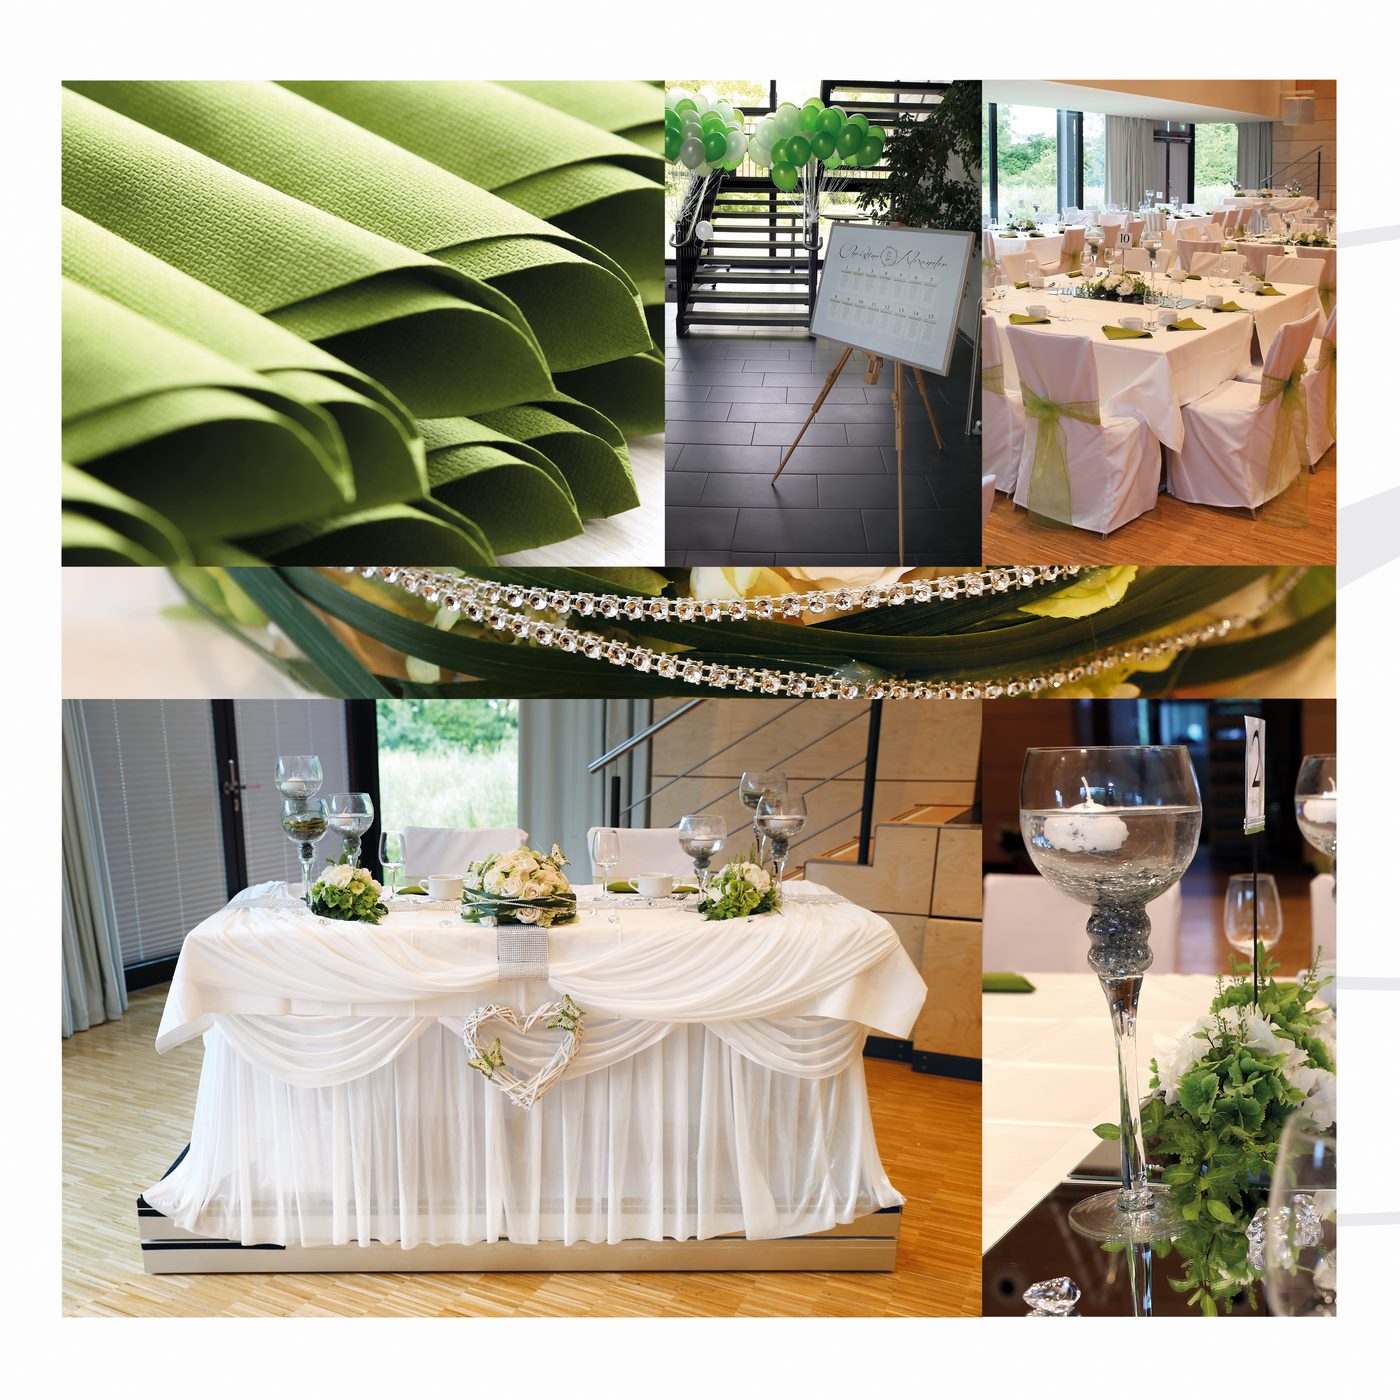 Dekoration in Grün mit Tischplan und grünen Stuhlschleifen